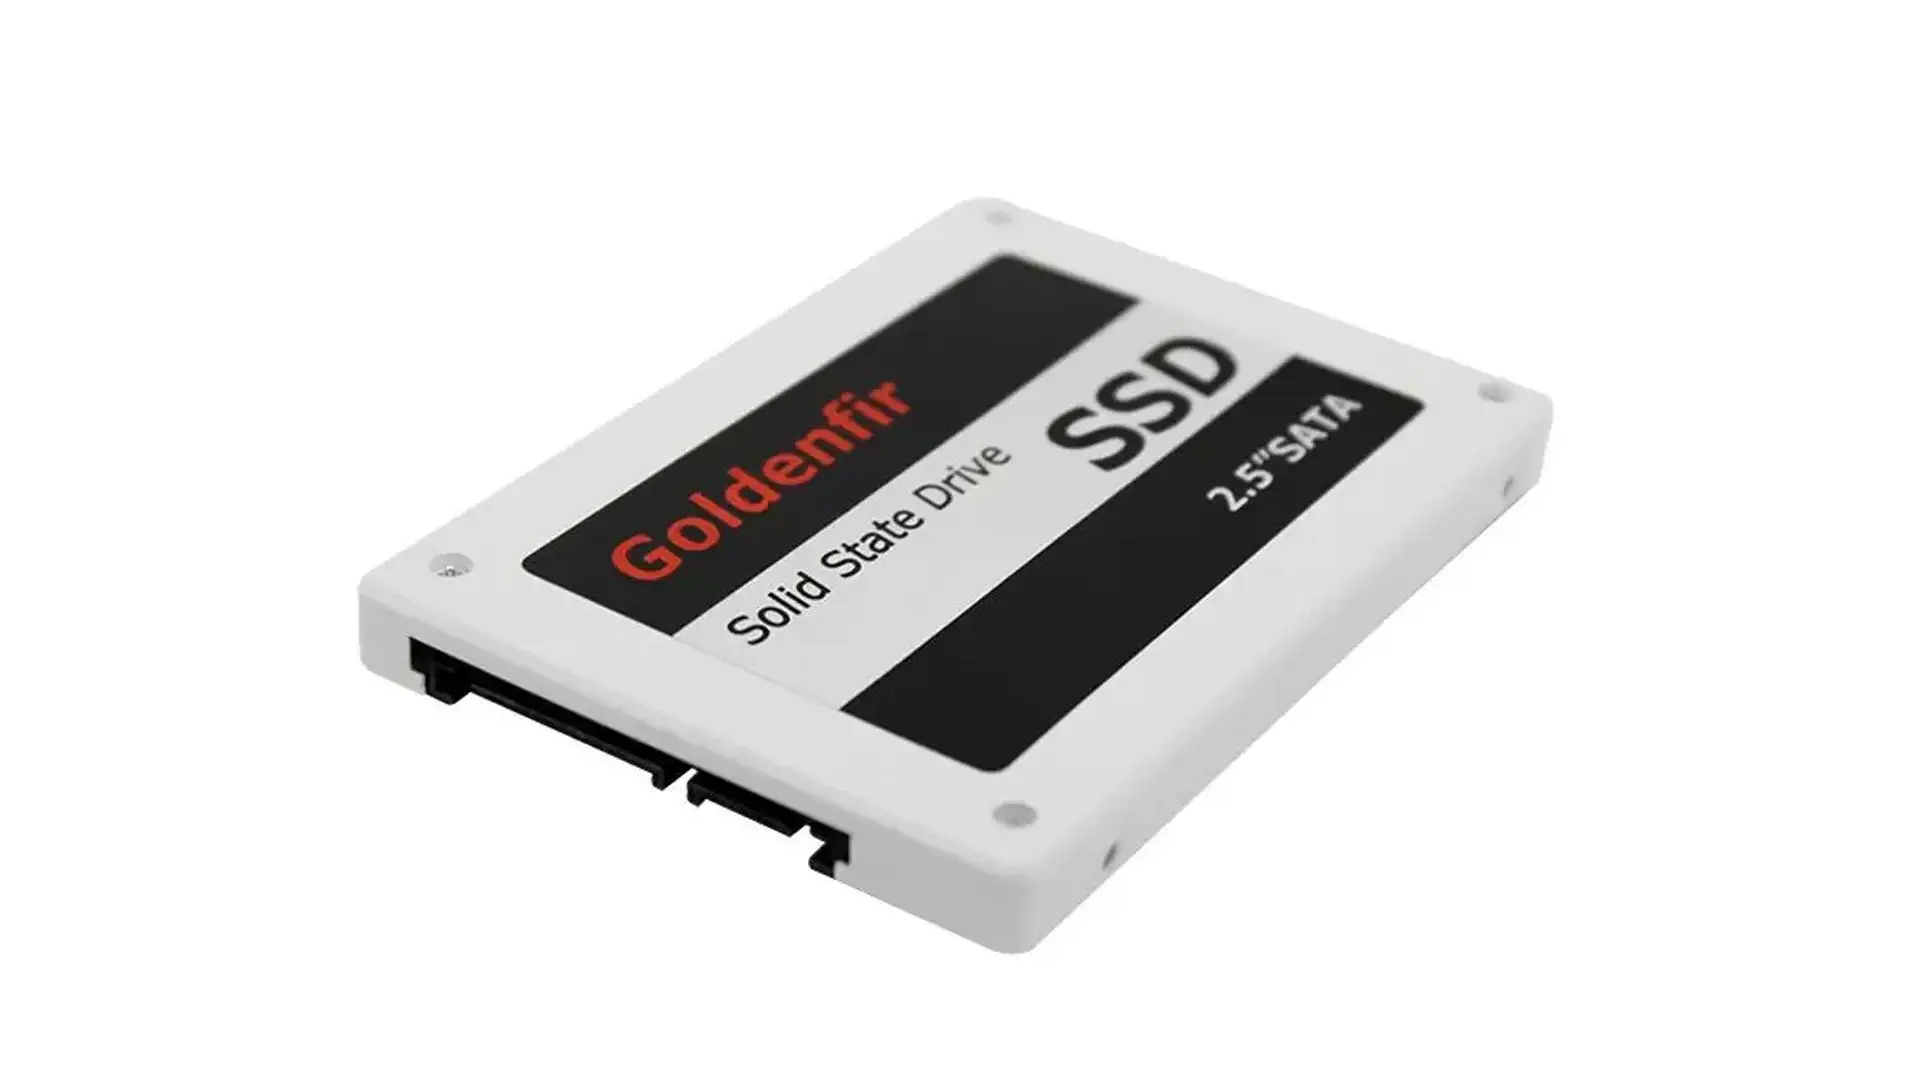 HD SSD 120GB Goldenfir preto e branco no fundo branco